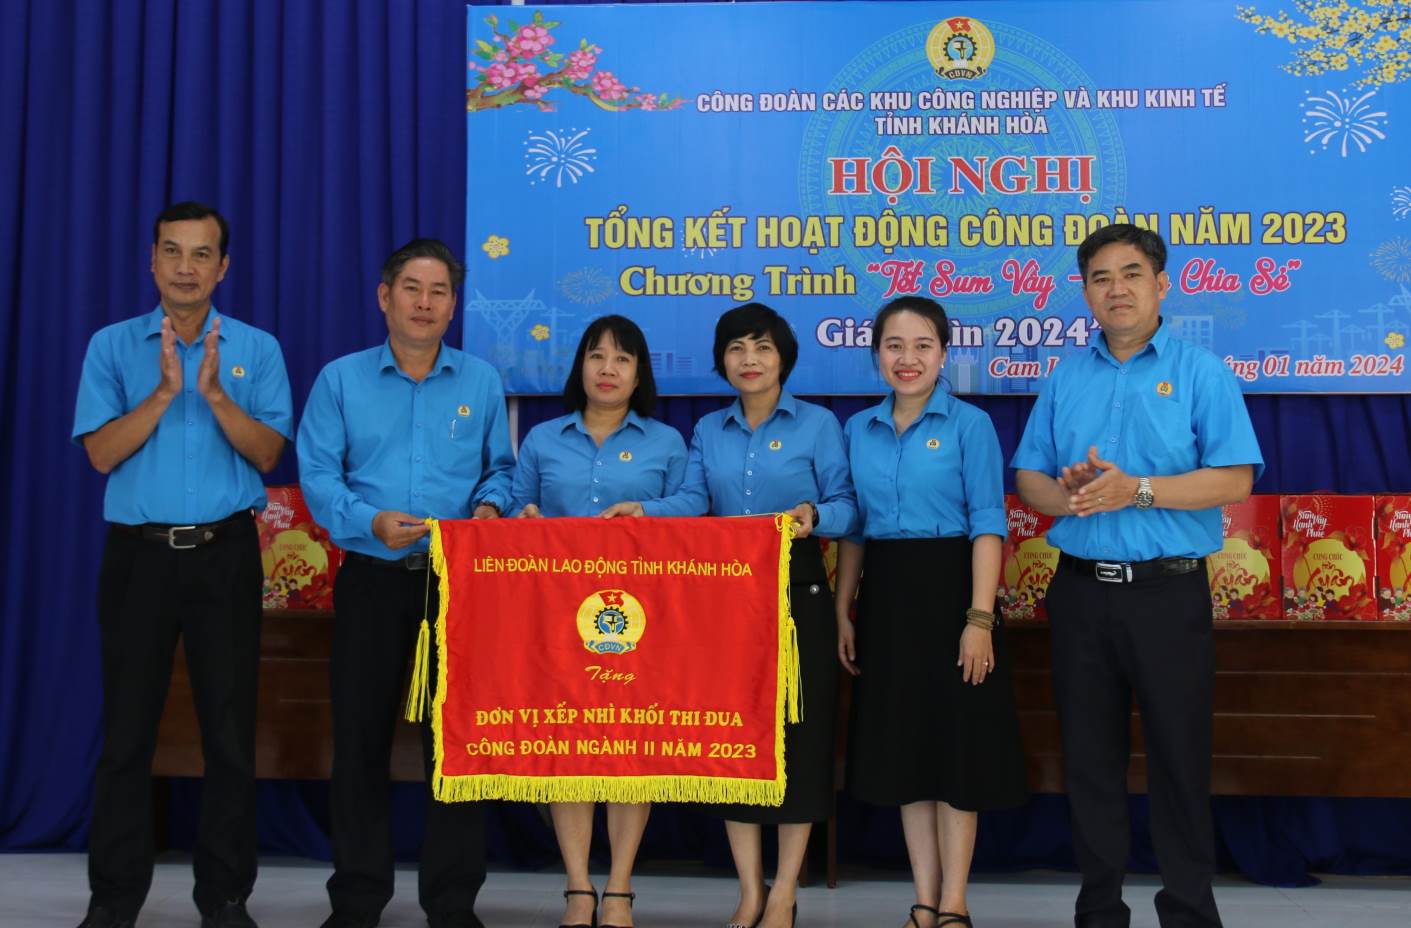 Lãnh đạo LĐLĐ tỉnh Khánh Hòa tặng cờ thi đua xuất sắc năm 2023 cho Ban Chấp hành Công đoàn các KCN-KKT tỉnh Khánh Hòa. Ảnh: Phương Linh